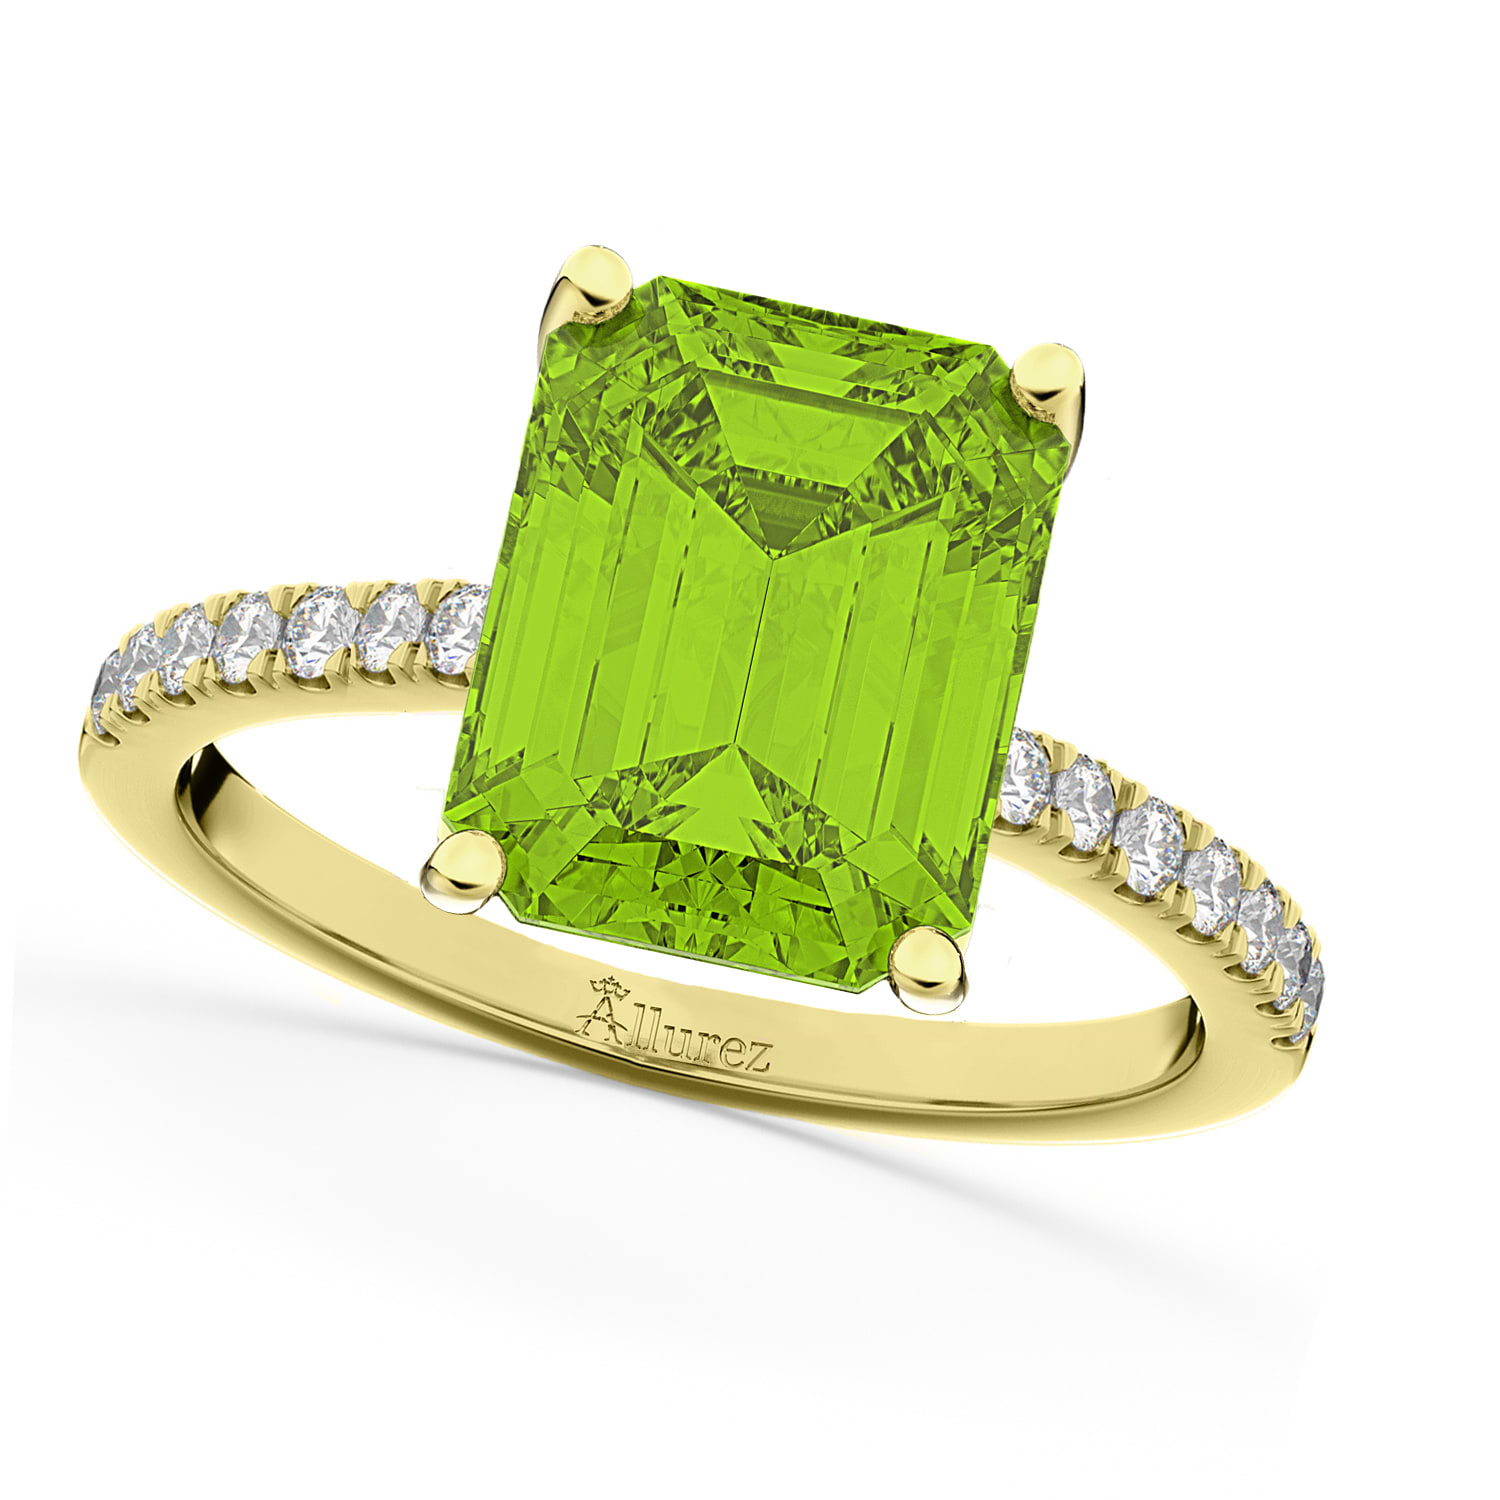 Emerald-Cut Peridot Diamond Engagement Ring 18k Yellow Gold (2.96ct)